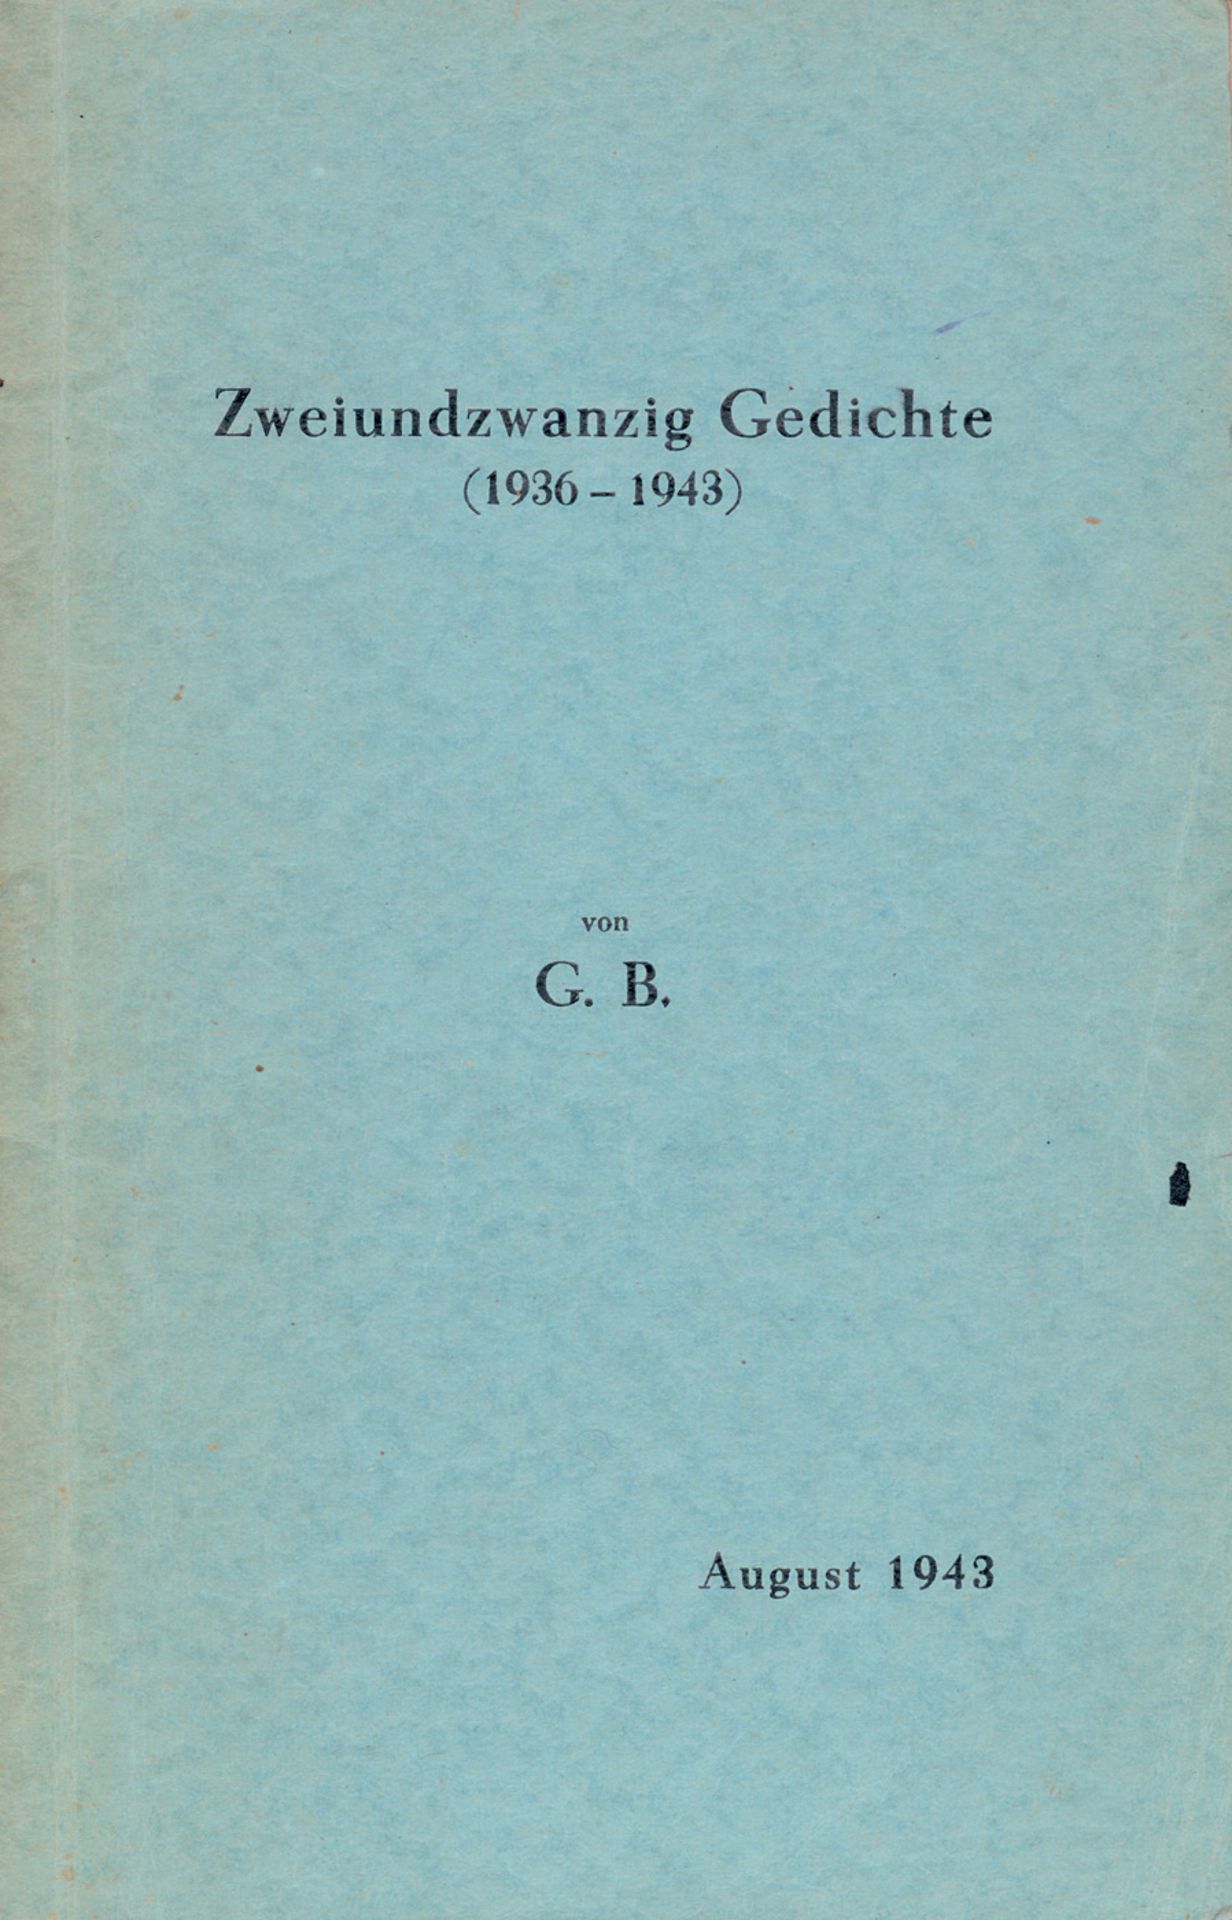 Benn, Gottfried: Zweiundzwanzig Gedichte (1936-1943)  Rarissimum mit Widmung  (Benn, Gottfried).